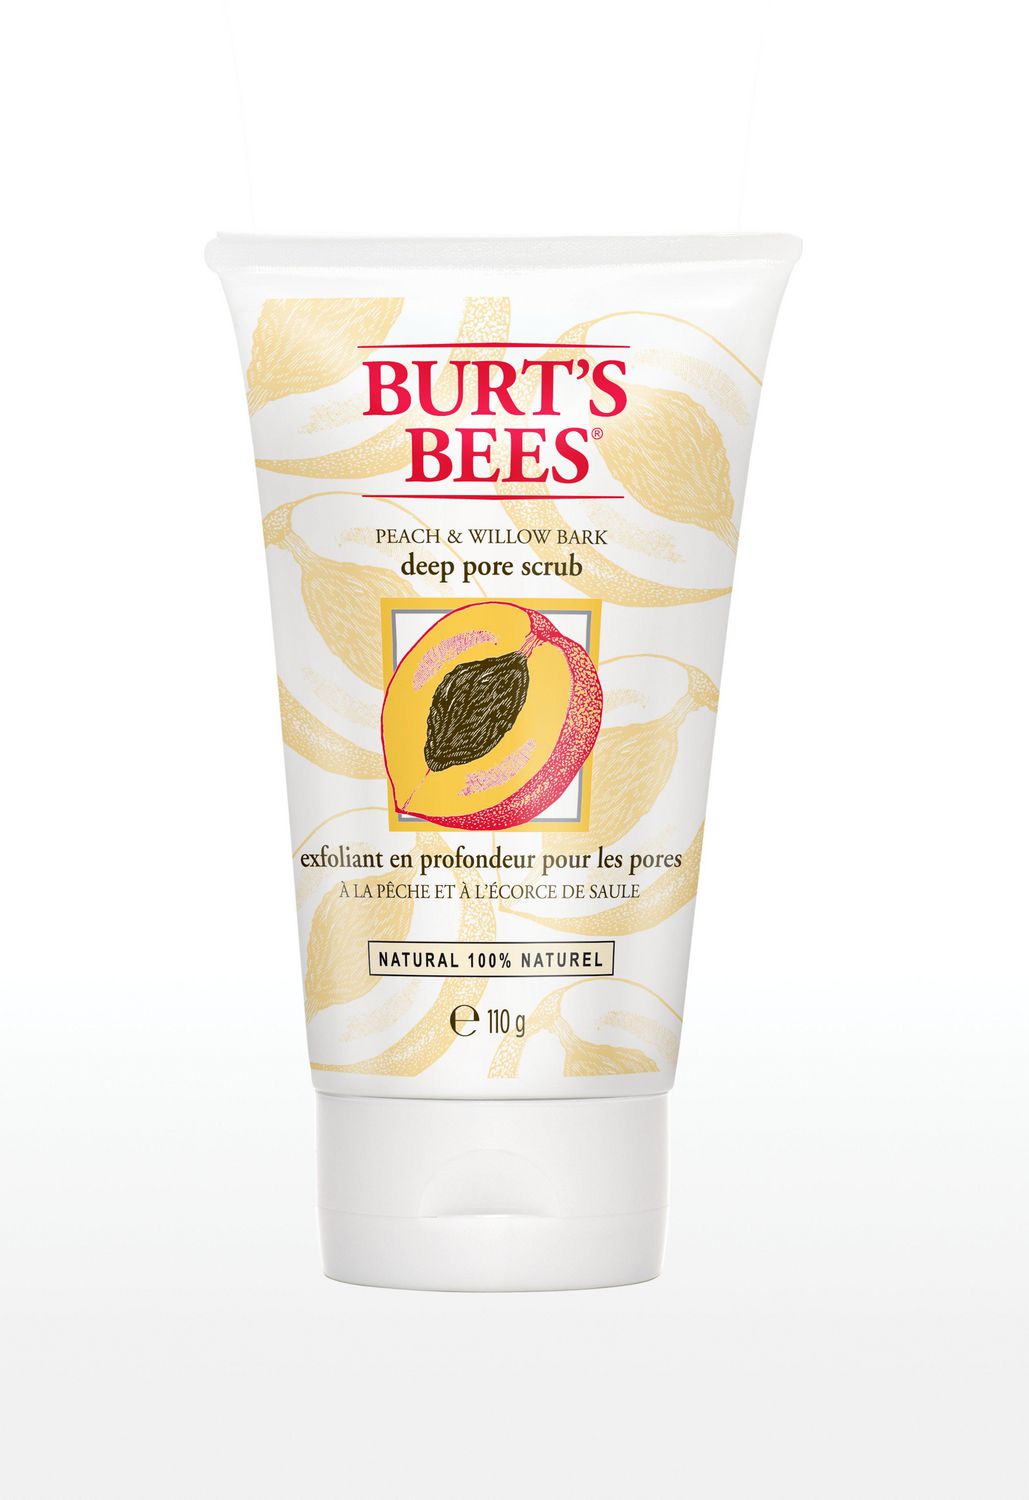 Burts Bees Peach And Willowbark Deep Pore Scrub Exfoliating Facial